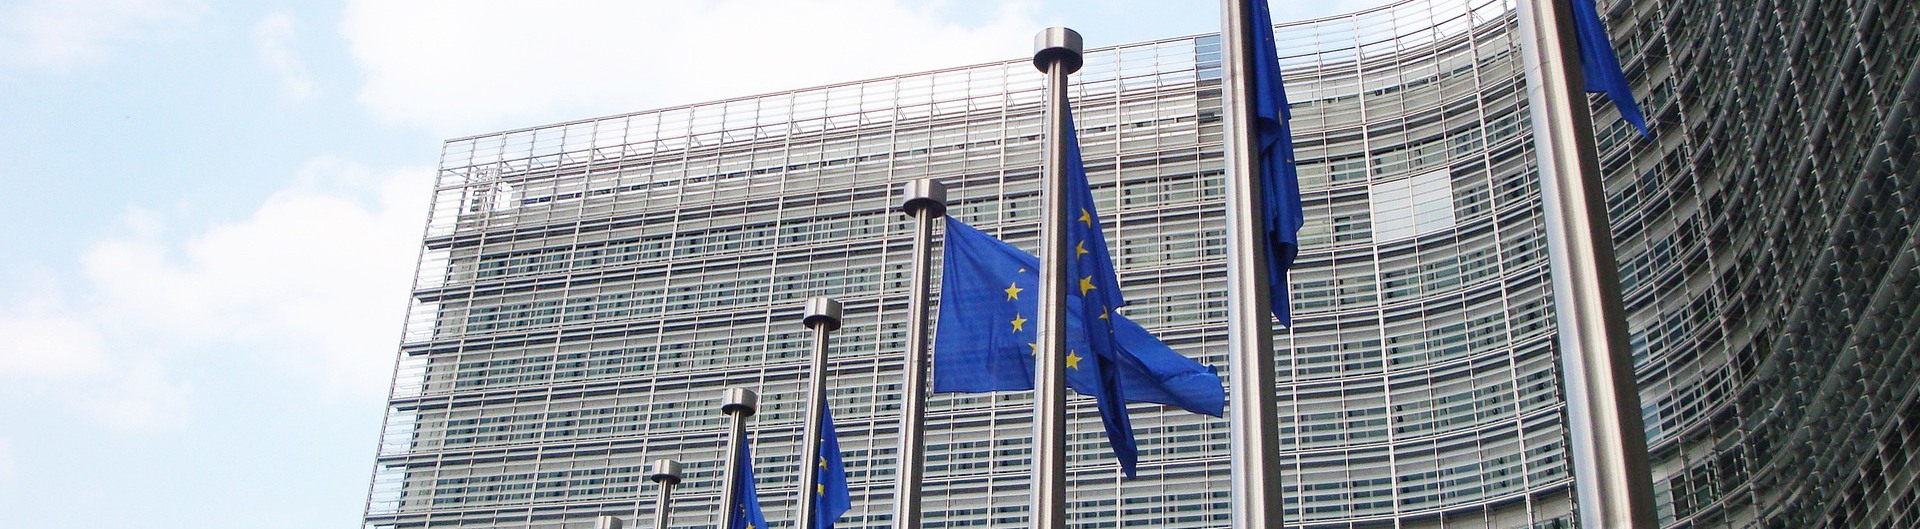 Flera EU-flaggor på rad framför en stor byggnad i glas.